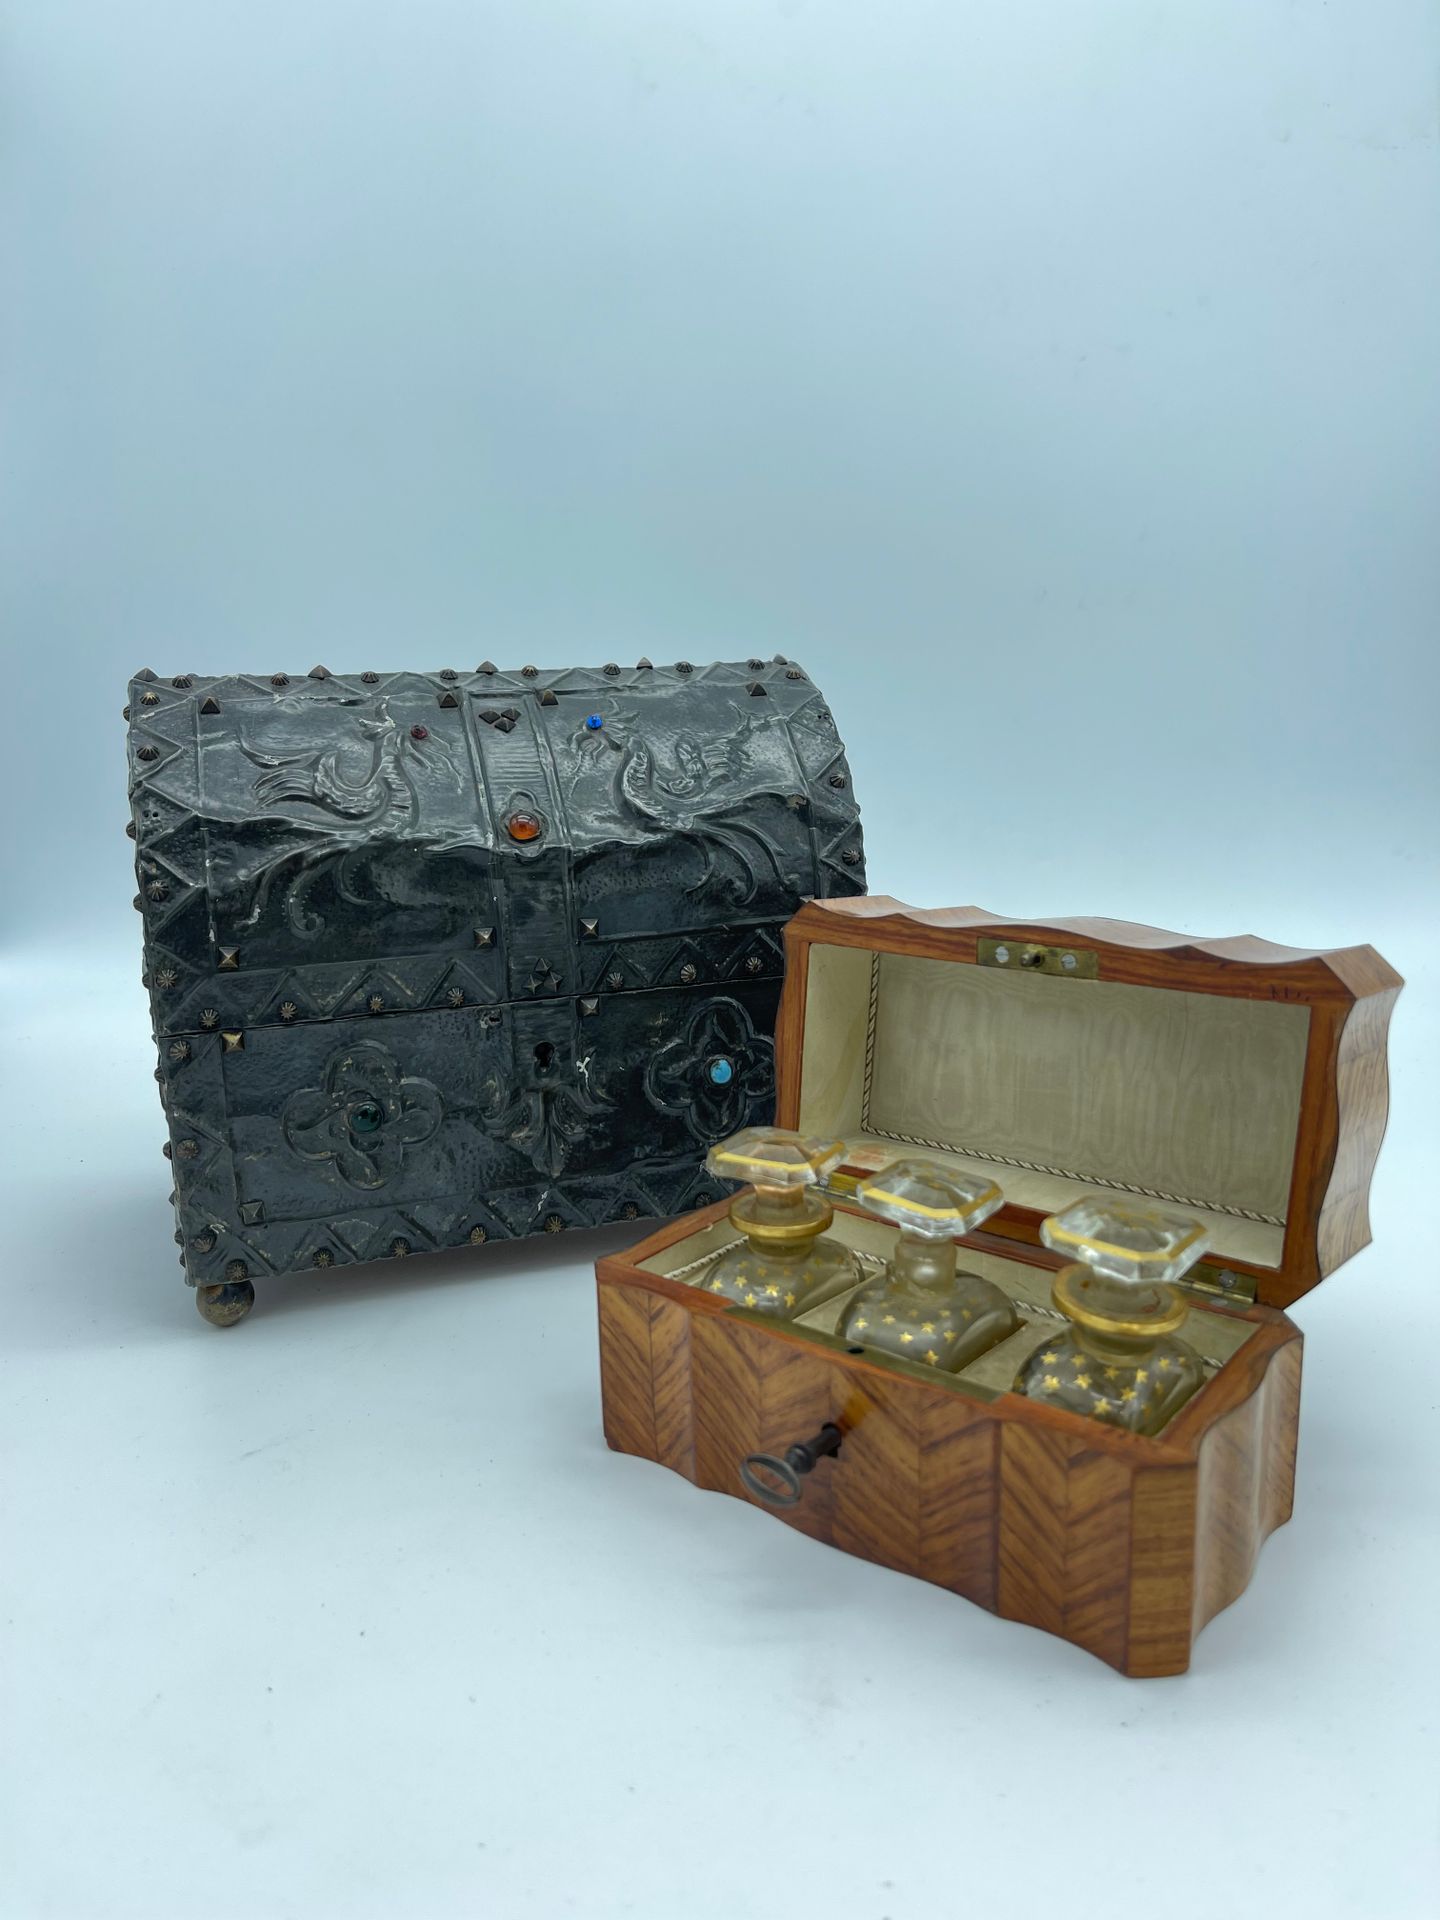 Null 哥特式风格的弧形盒子和一个小香水盒，镶嵌着雪佛兰装饰，里面有三个镀金的星形玻璃瓶（事故）。